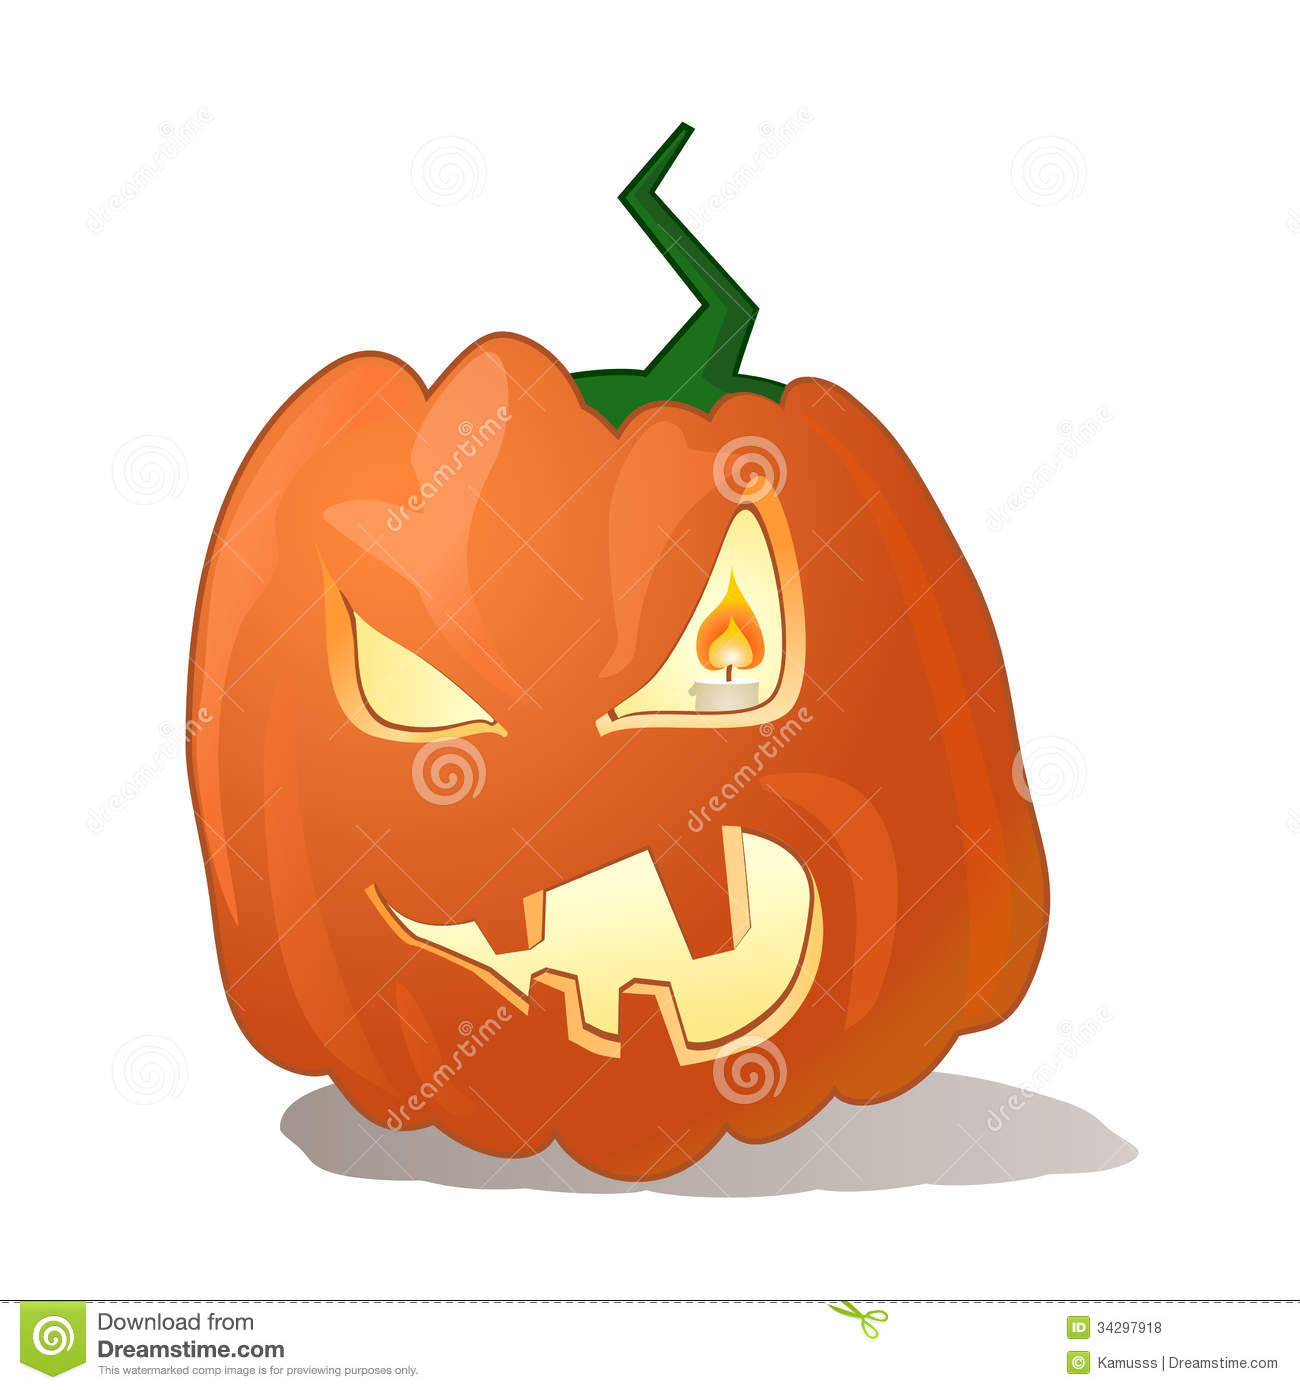 Halloween Vector Pumpkins